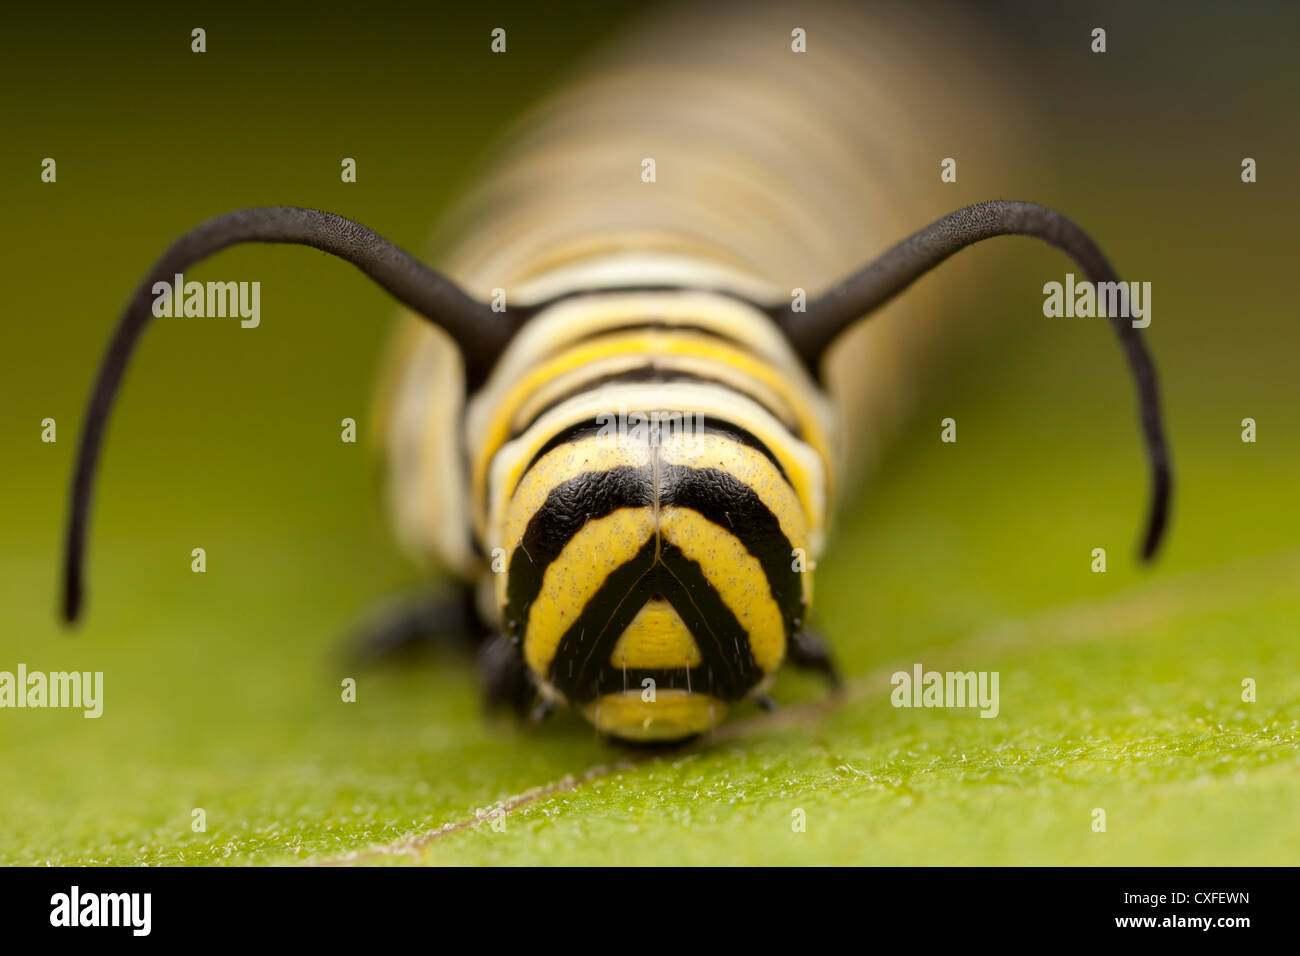 Una vista frontale della testa di un quinto instar farfalla monarca (Danaus Plexippus) caterpillar (larva) Foto Stock